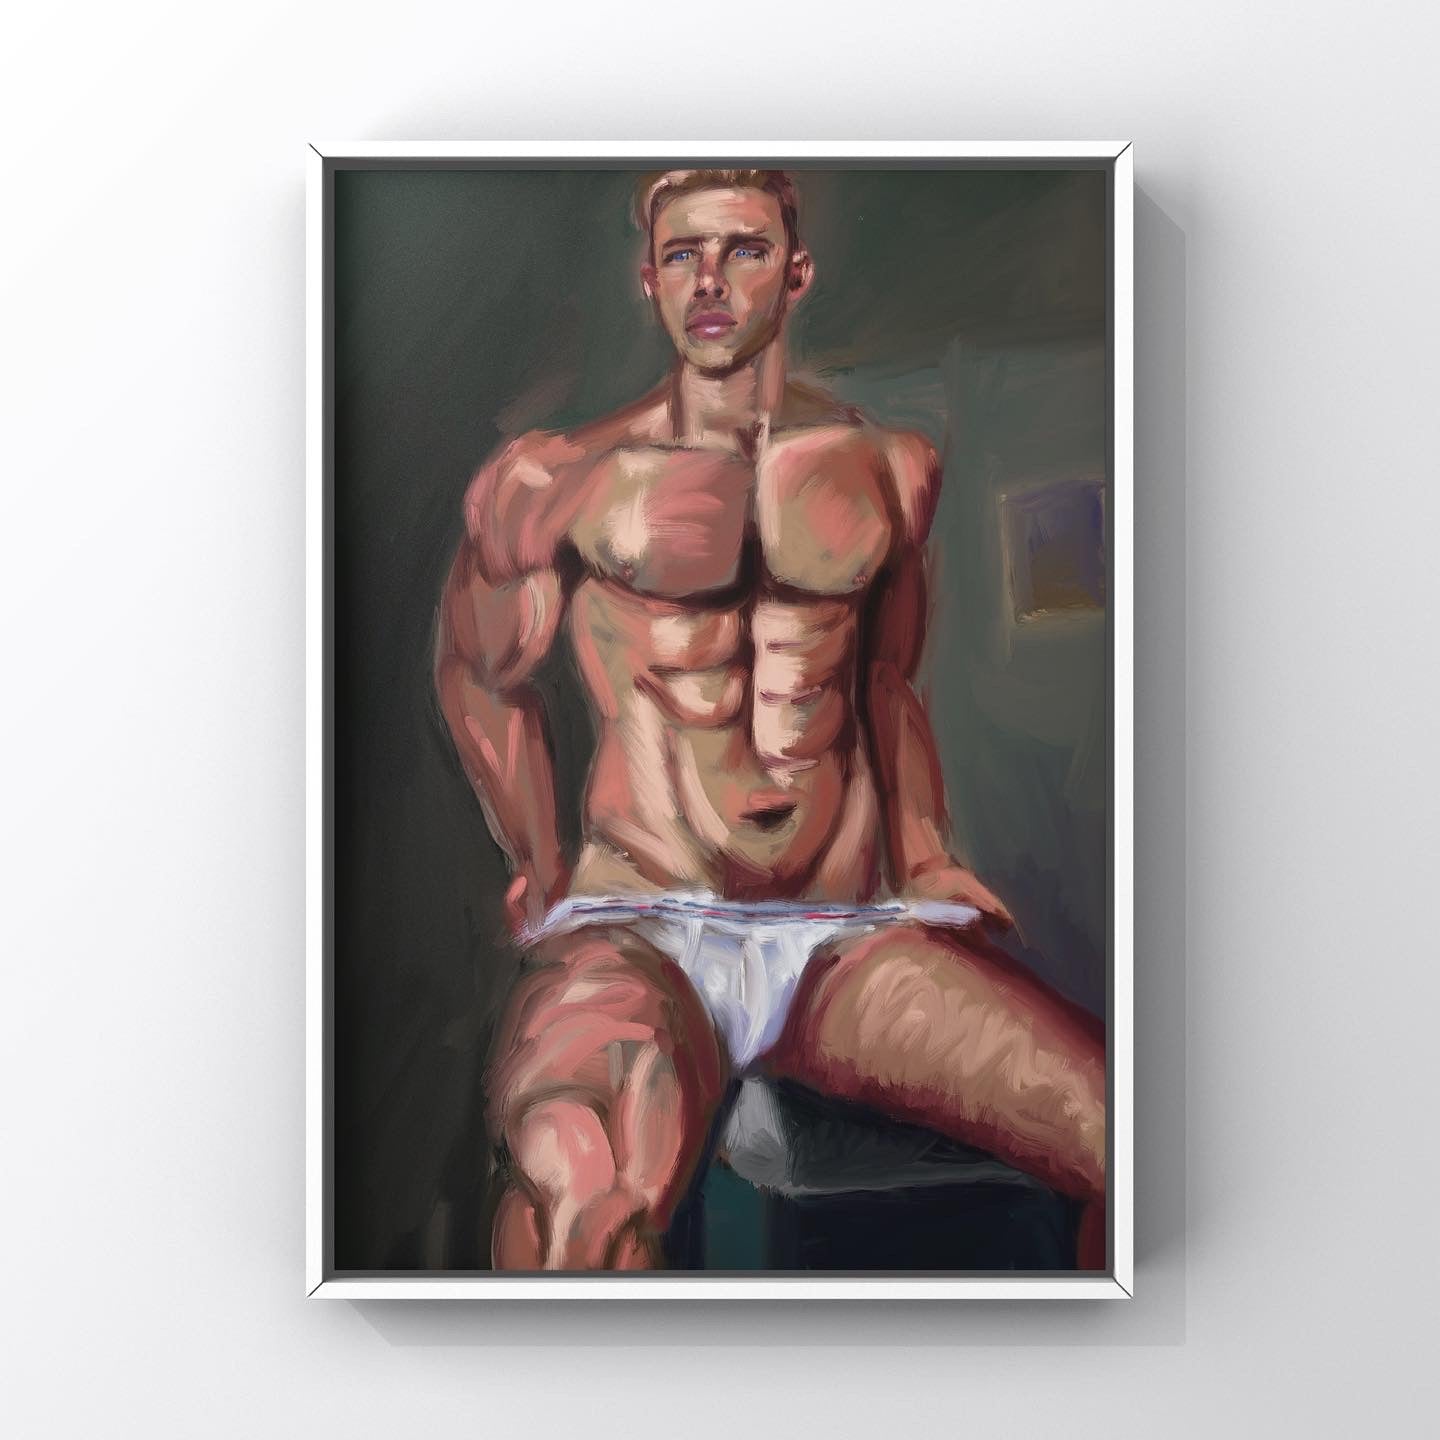 Male figurative art work featuring male in jock strap